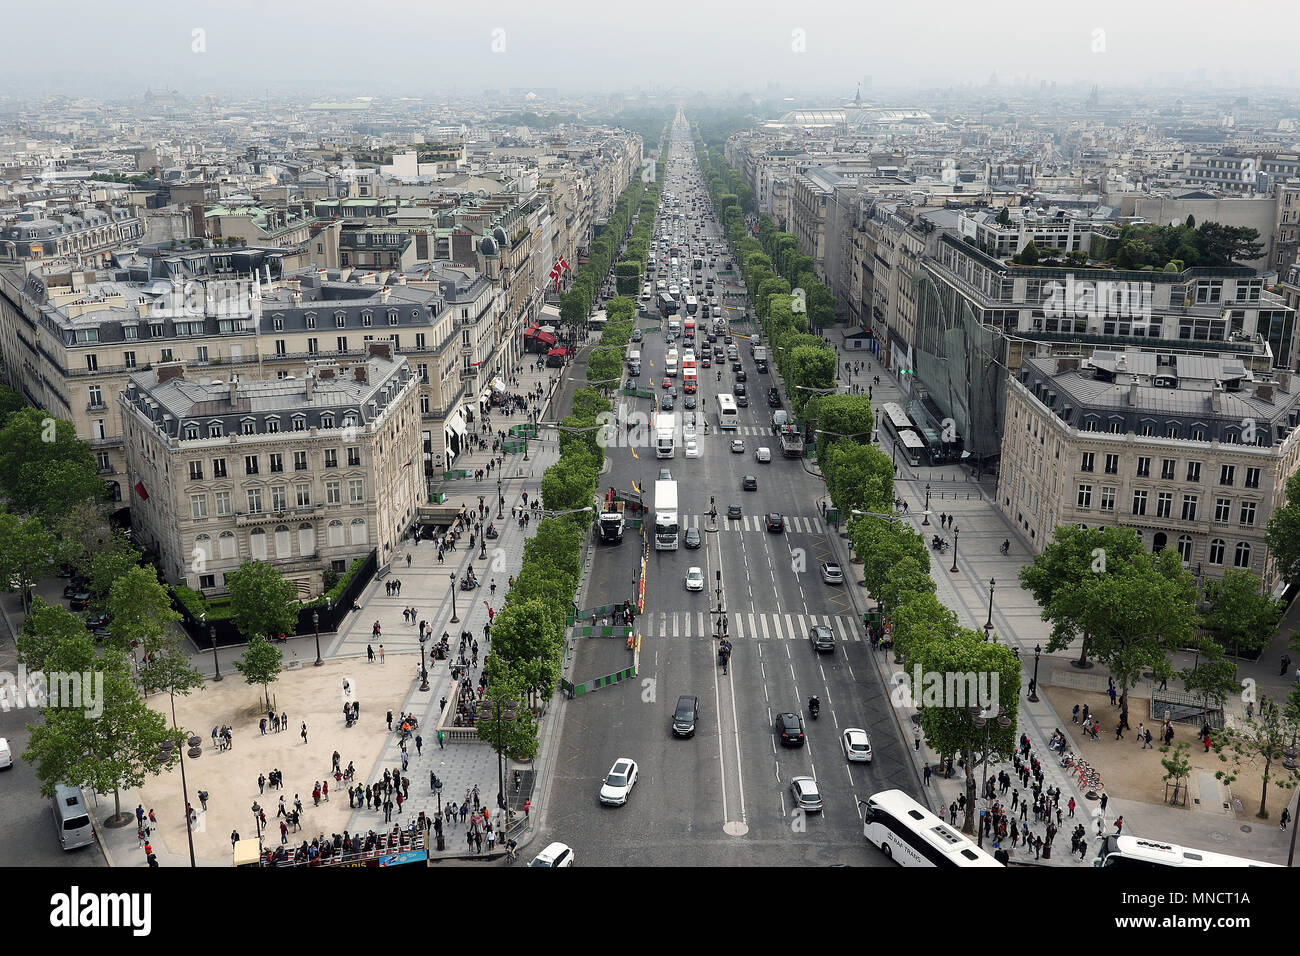 Champs-�lys�es, Paris sights, Paris, France, 15 May 2018, Photo by Richard Goldschmidt Stock Photo